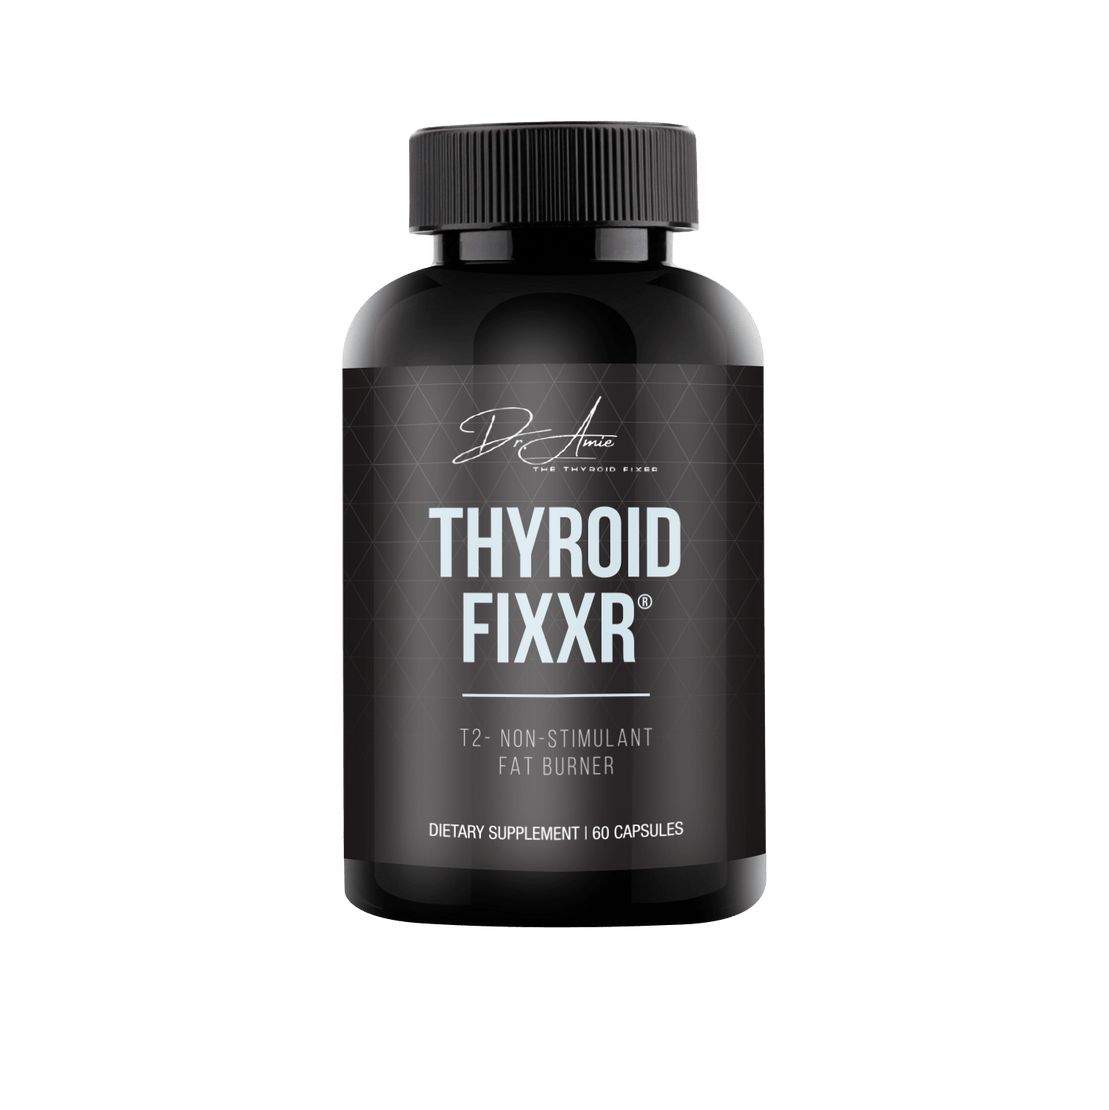 Thyroid Fixxr®